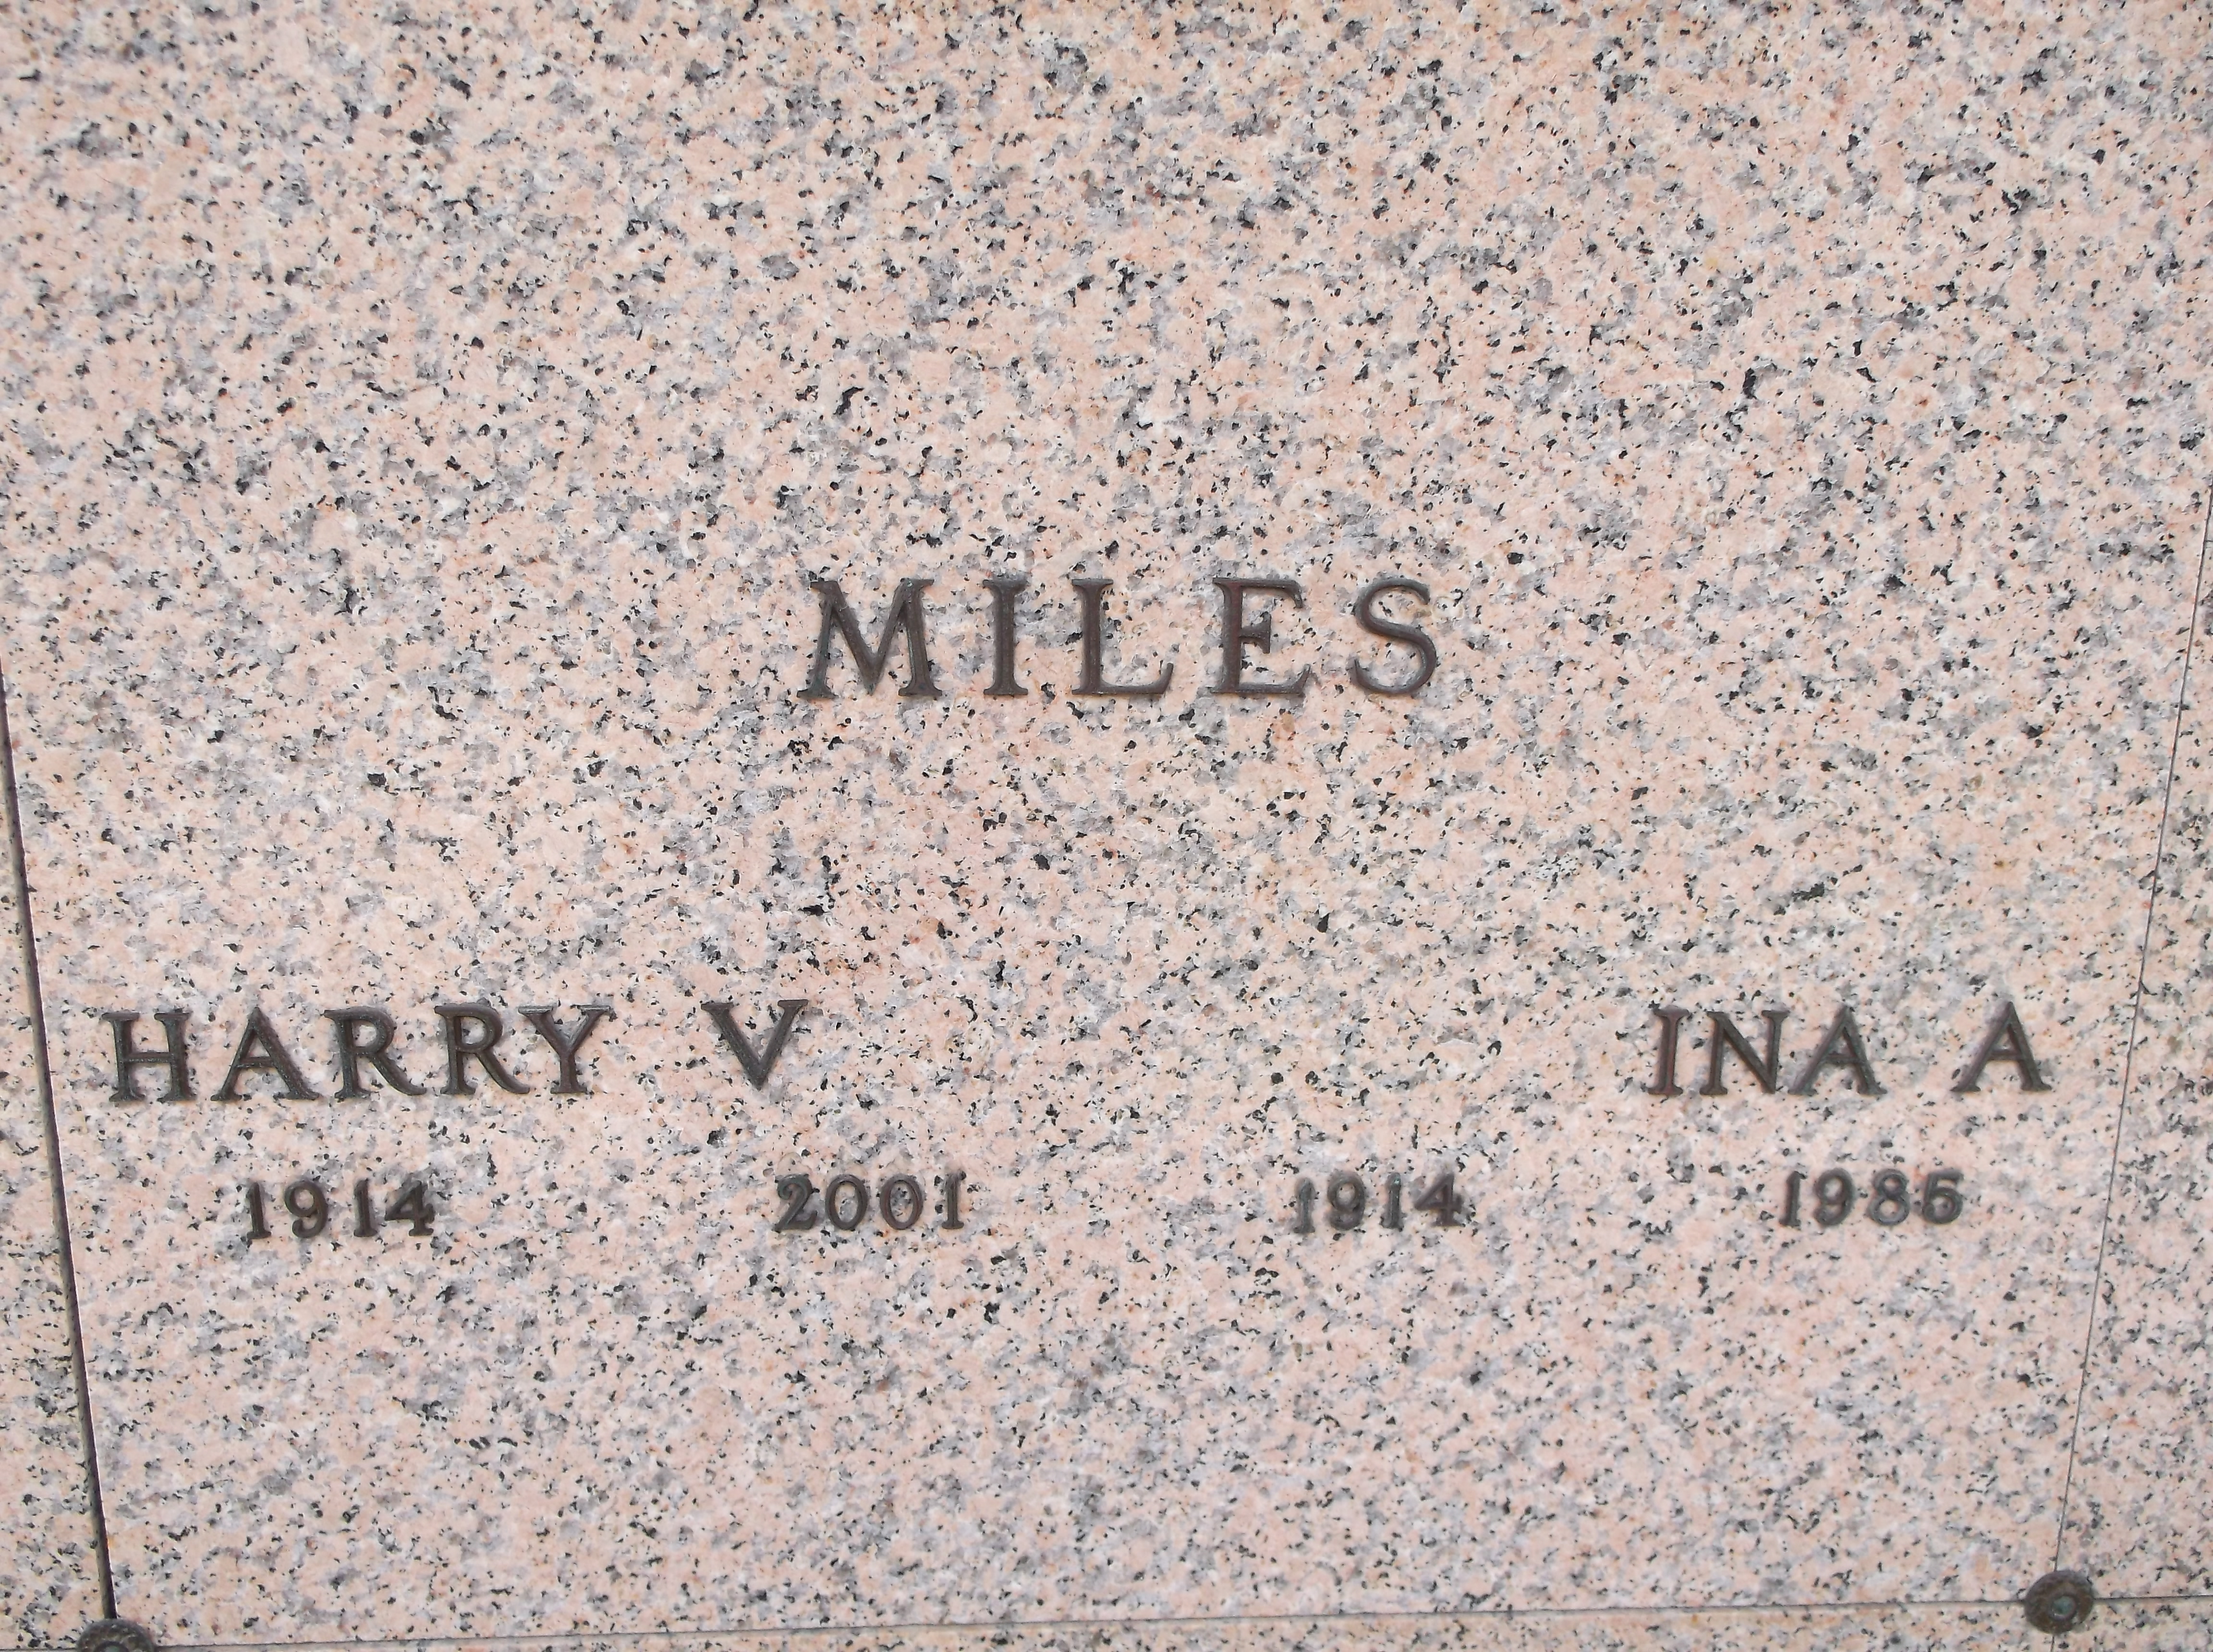 Harry V Miles